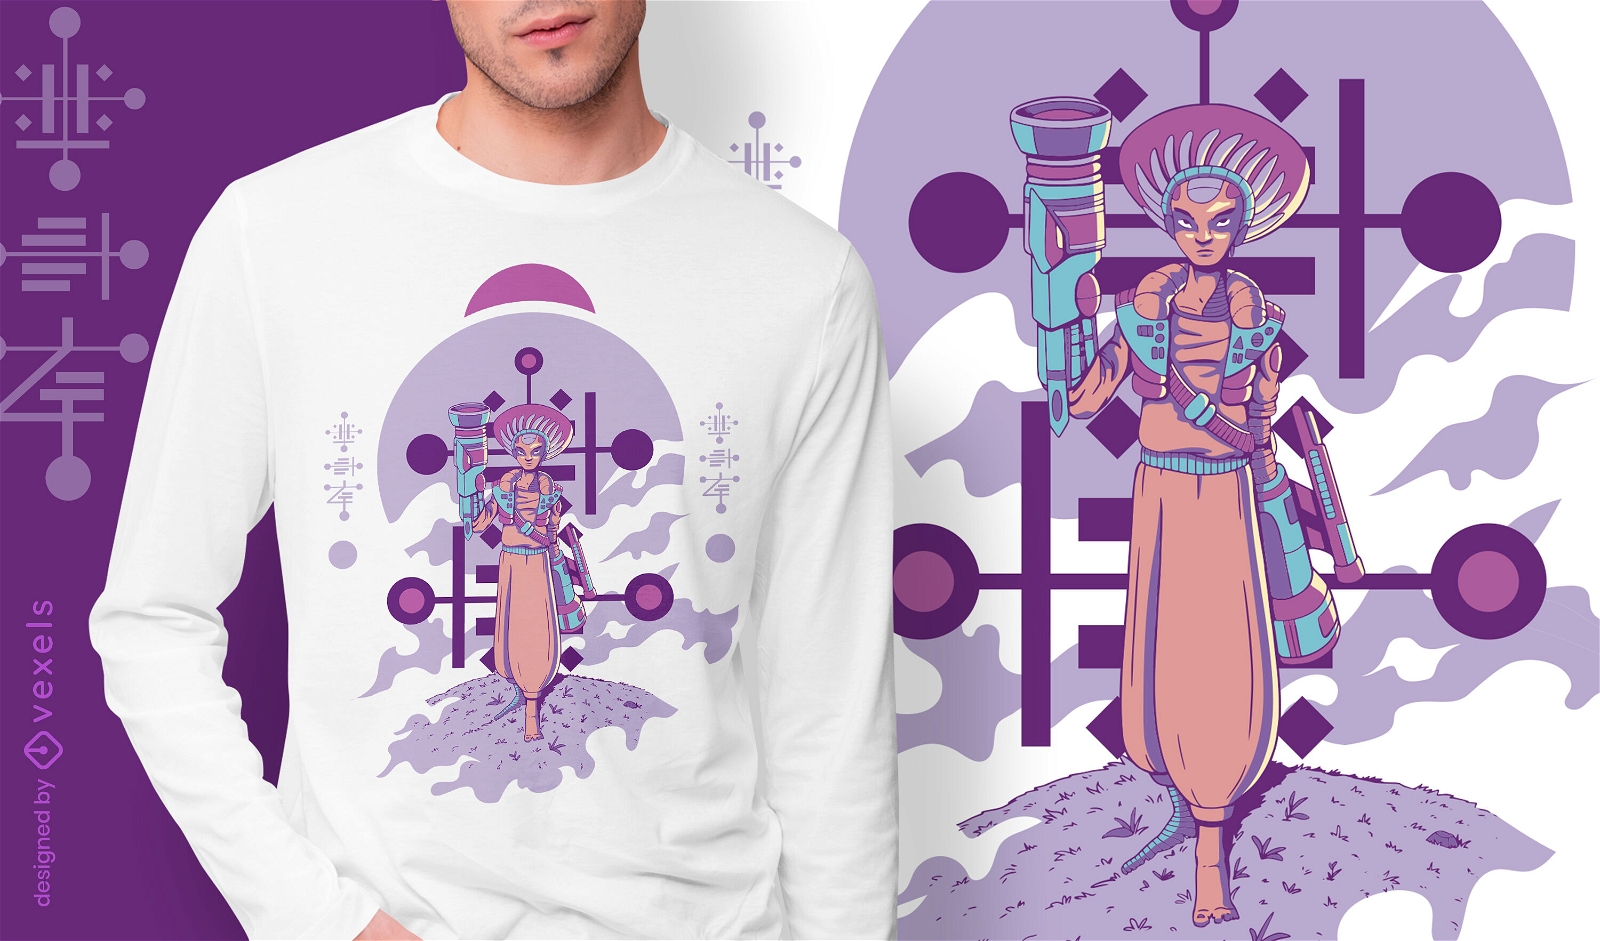 Stehendes Cyborg-Alien-T-Shirt-Design